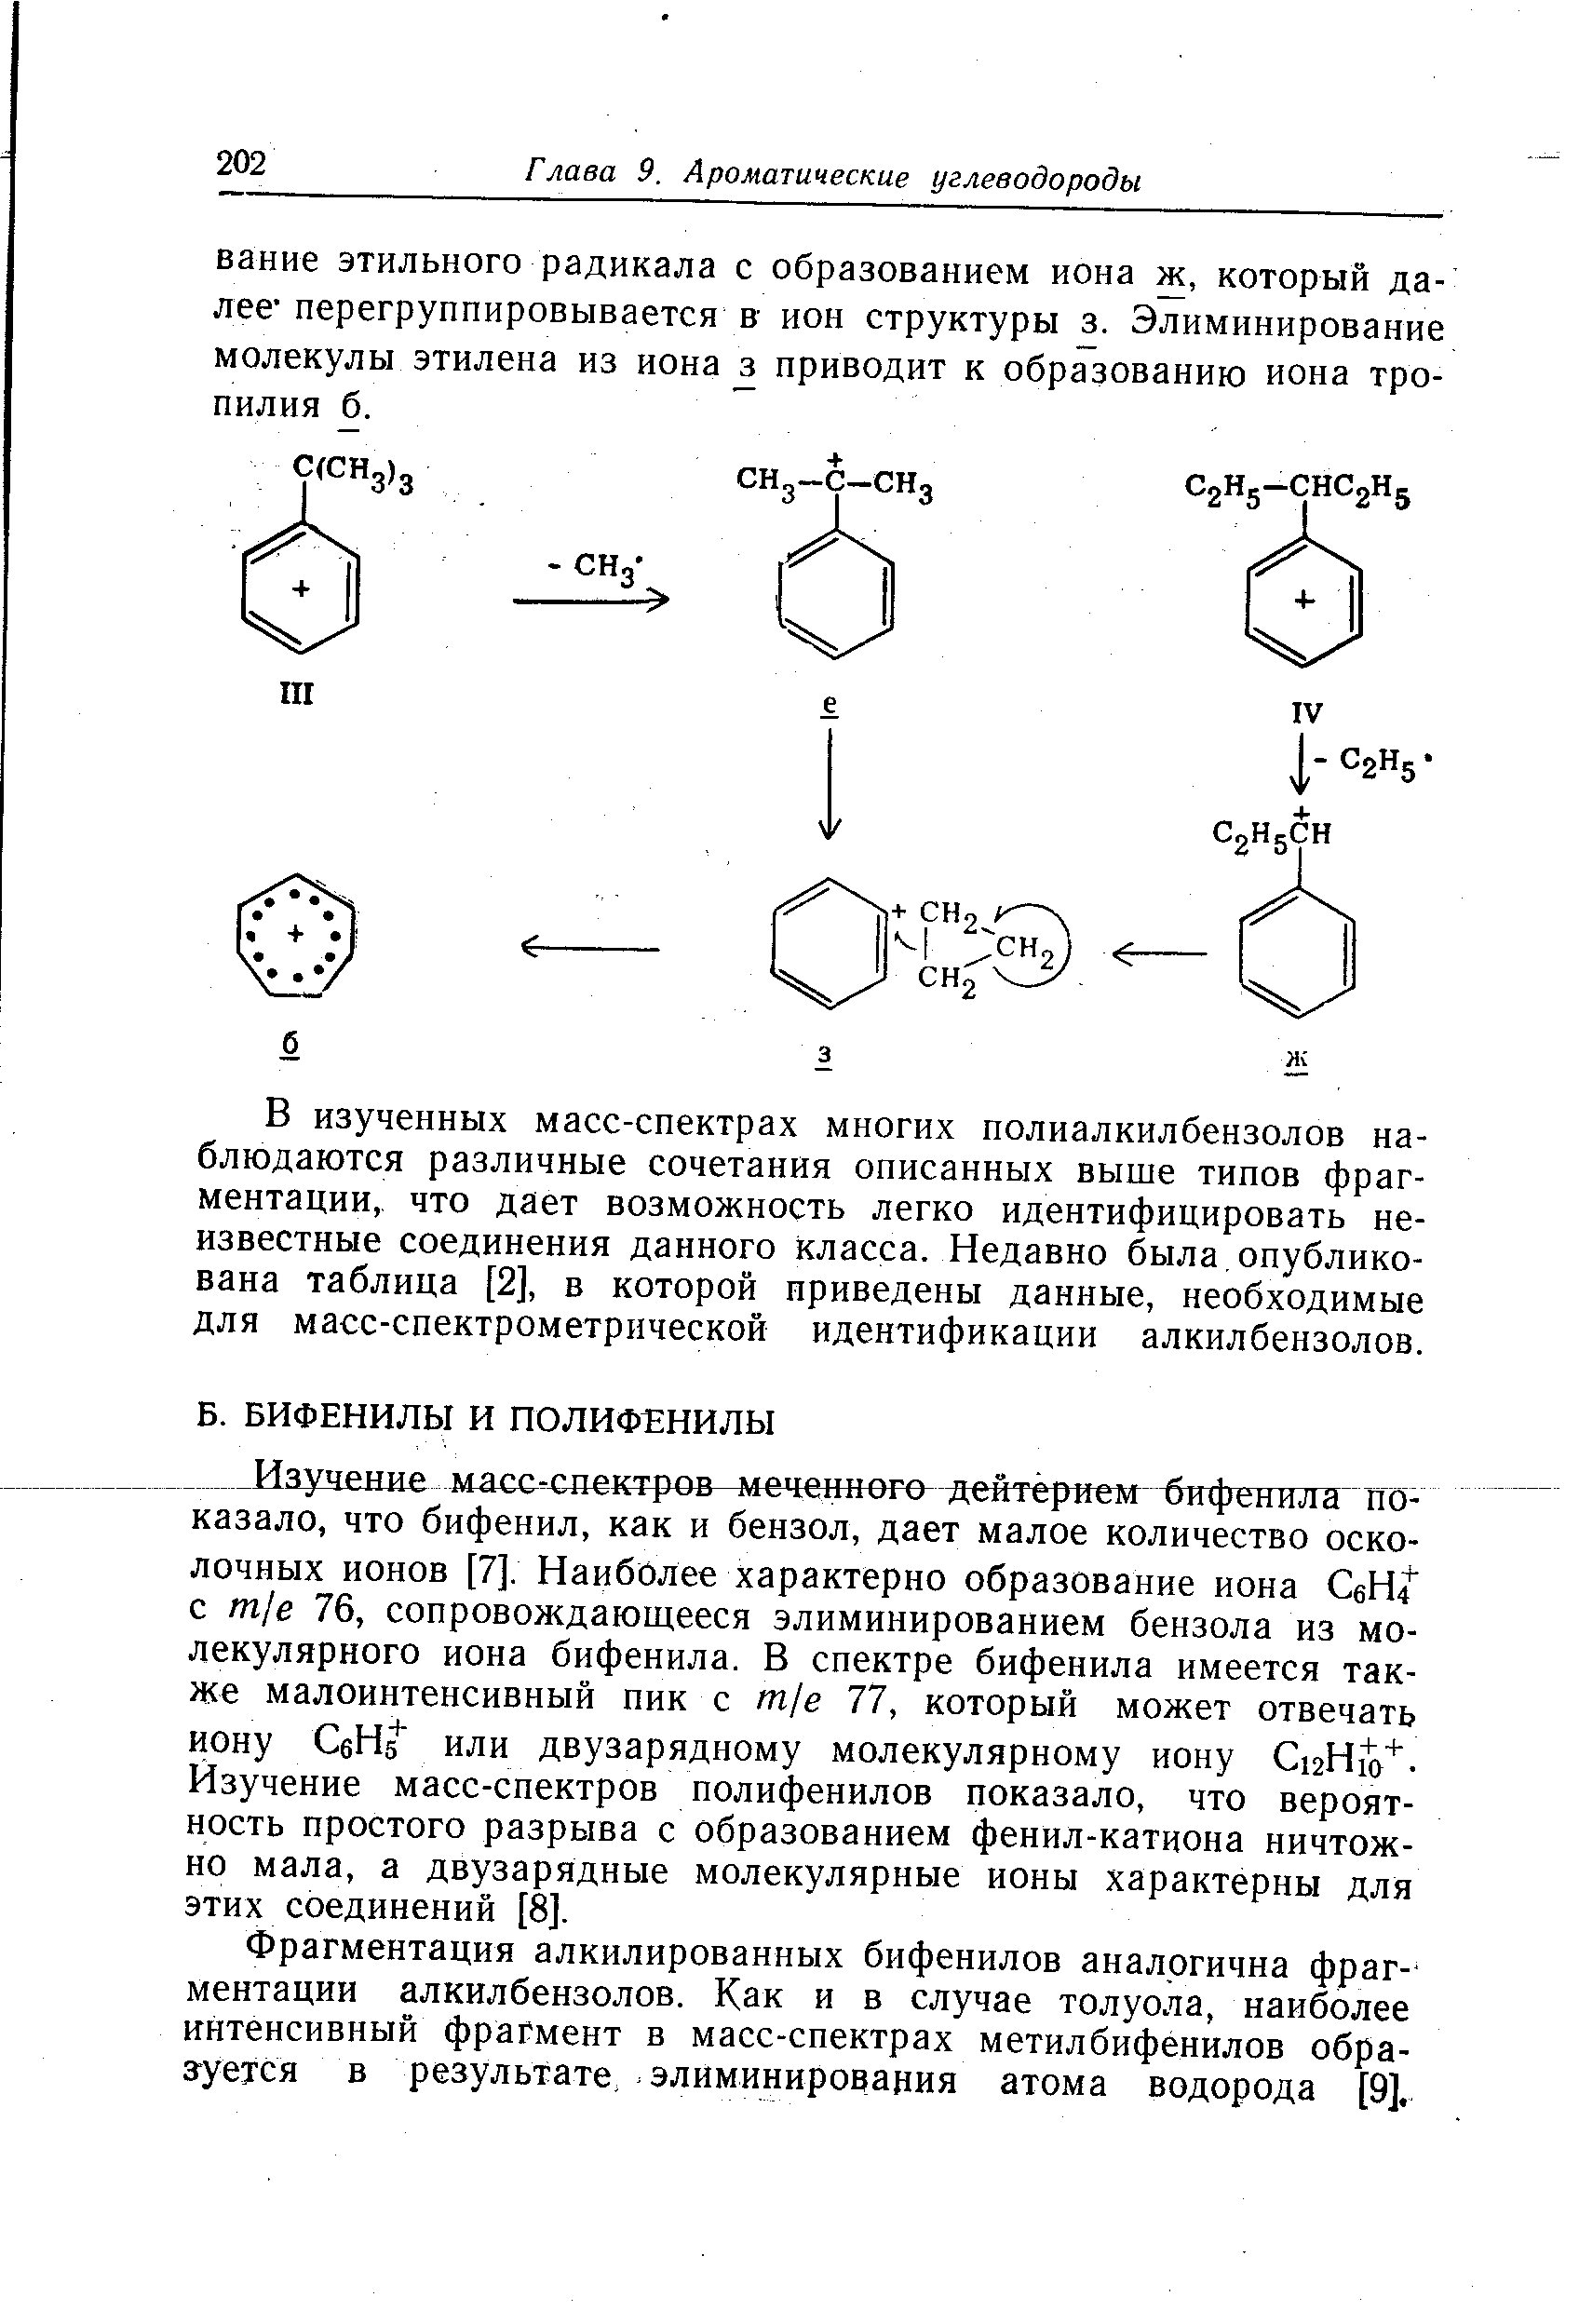 Фрагментация алкилированных бифенилов аналогична фрагментации алкилбензолов. Как и в случае толуола, наиболее интенсивный фрагмент в масс-спектрах метилбифенилов обра-згуется в результате, элиминирования атома водорода [9].